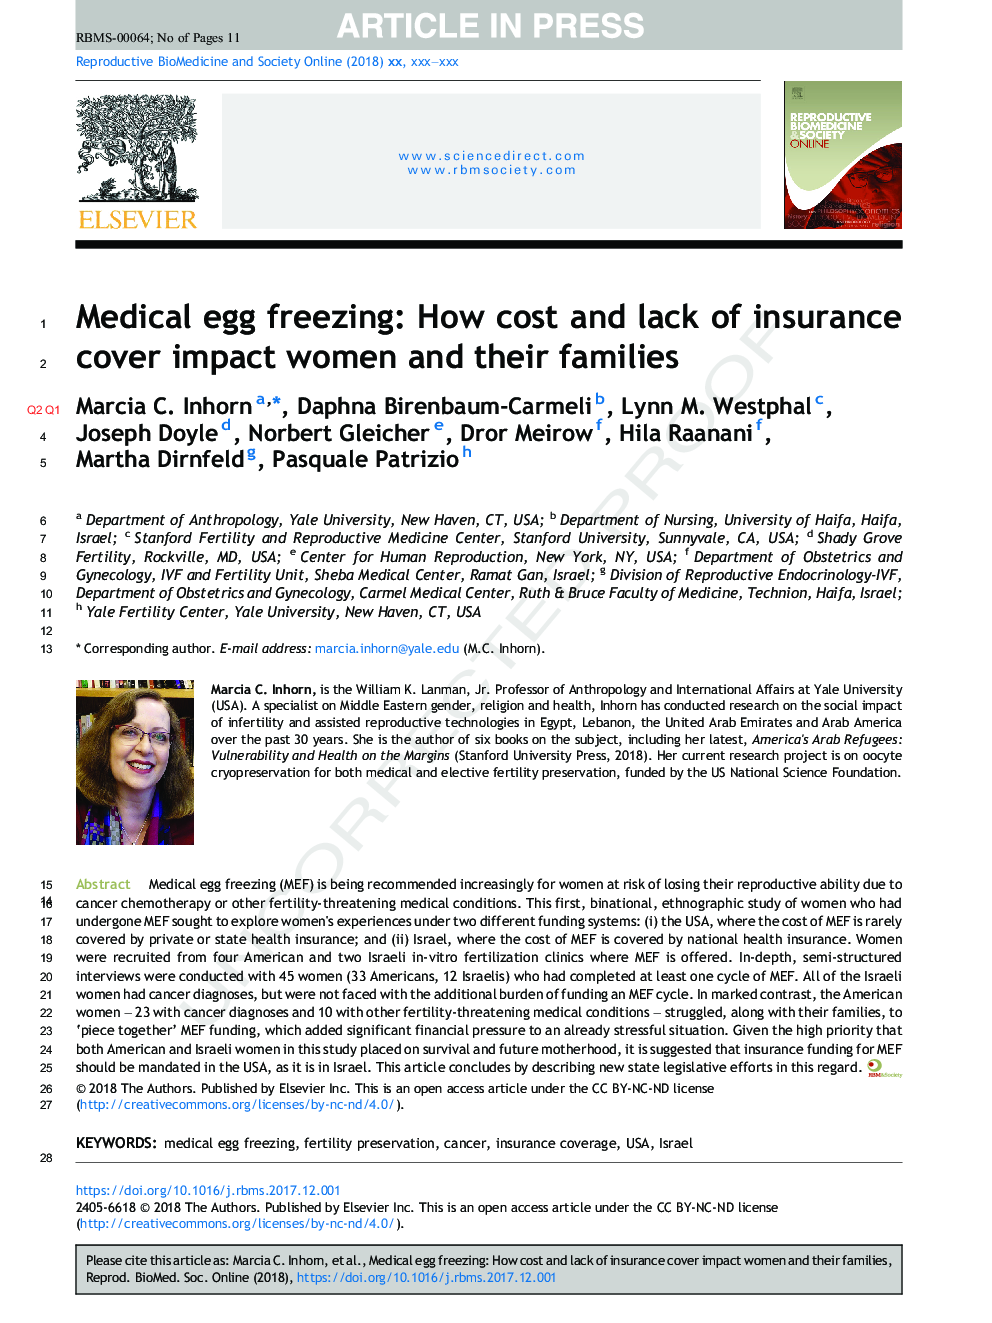 انجماد تخم مرغ پزشکی: چقدر هزینه و عدم پوشش بیمه در زنان و خانواده های آنها تاثیر می گذارد 